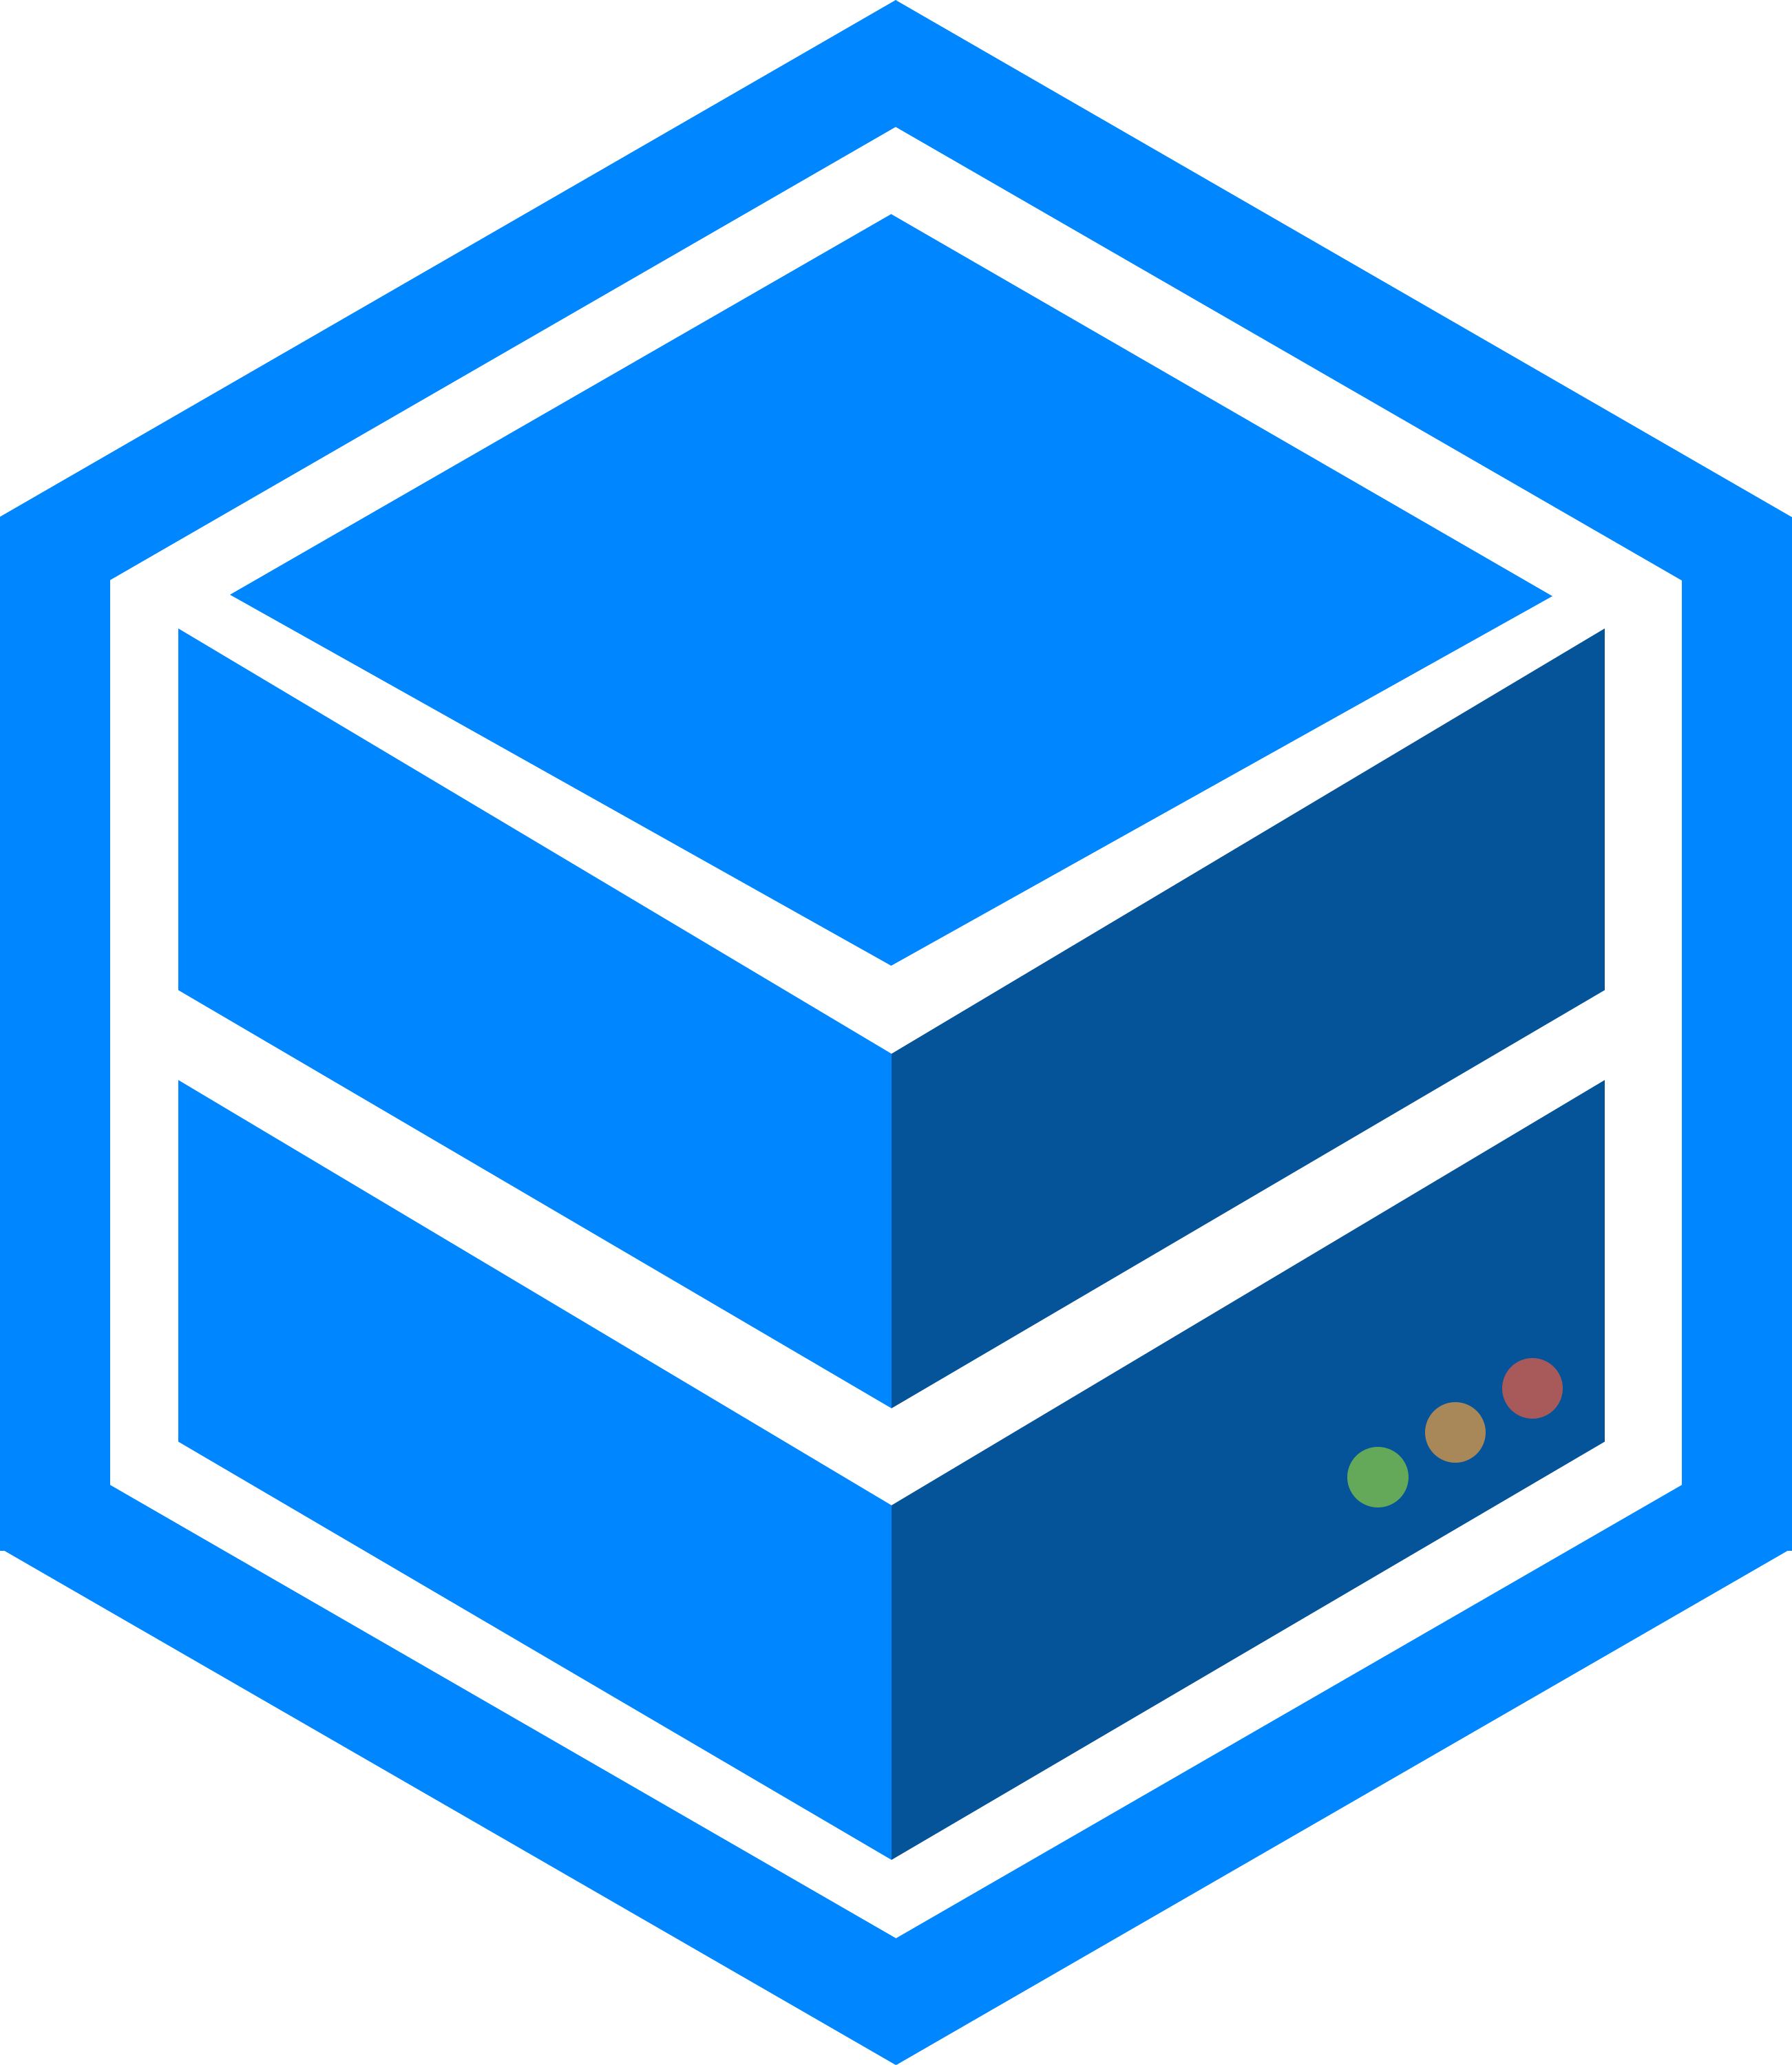 Server-Bench.de Logo